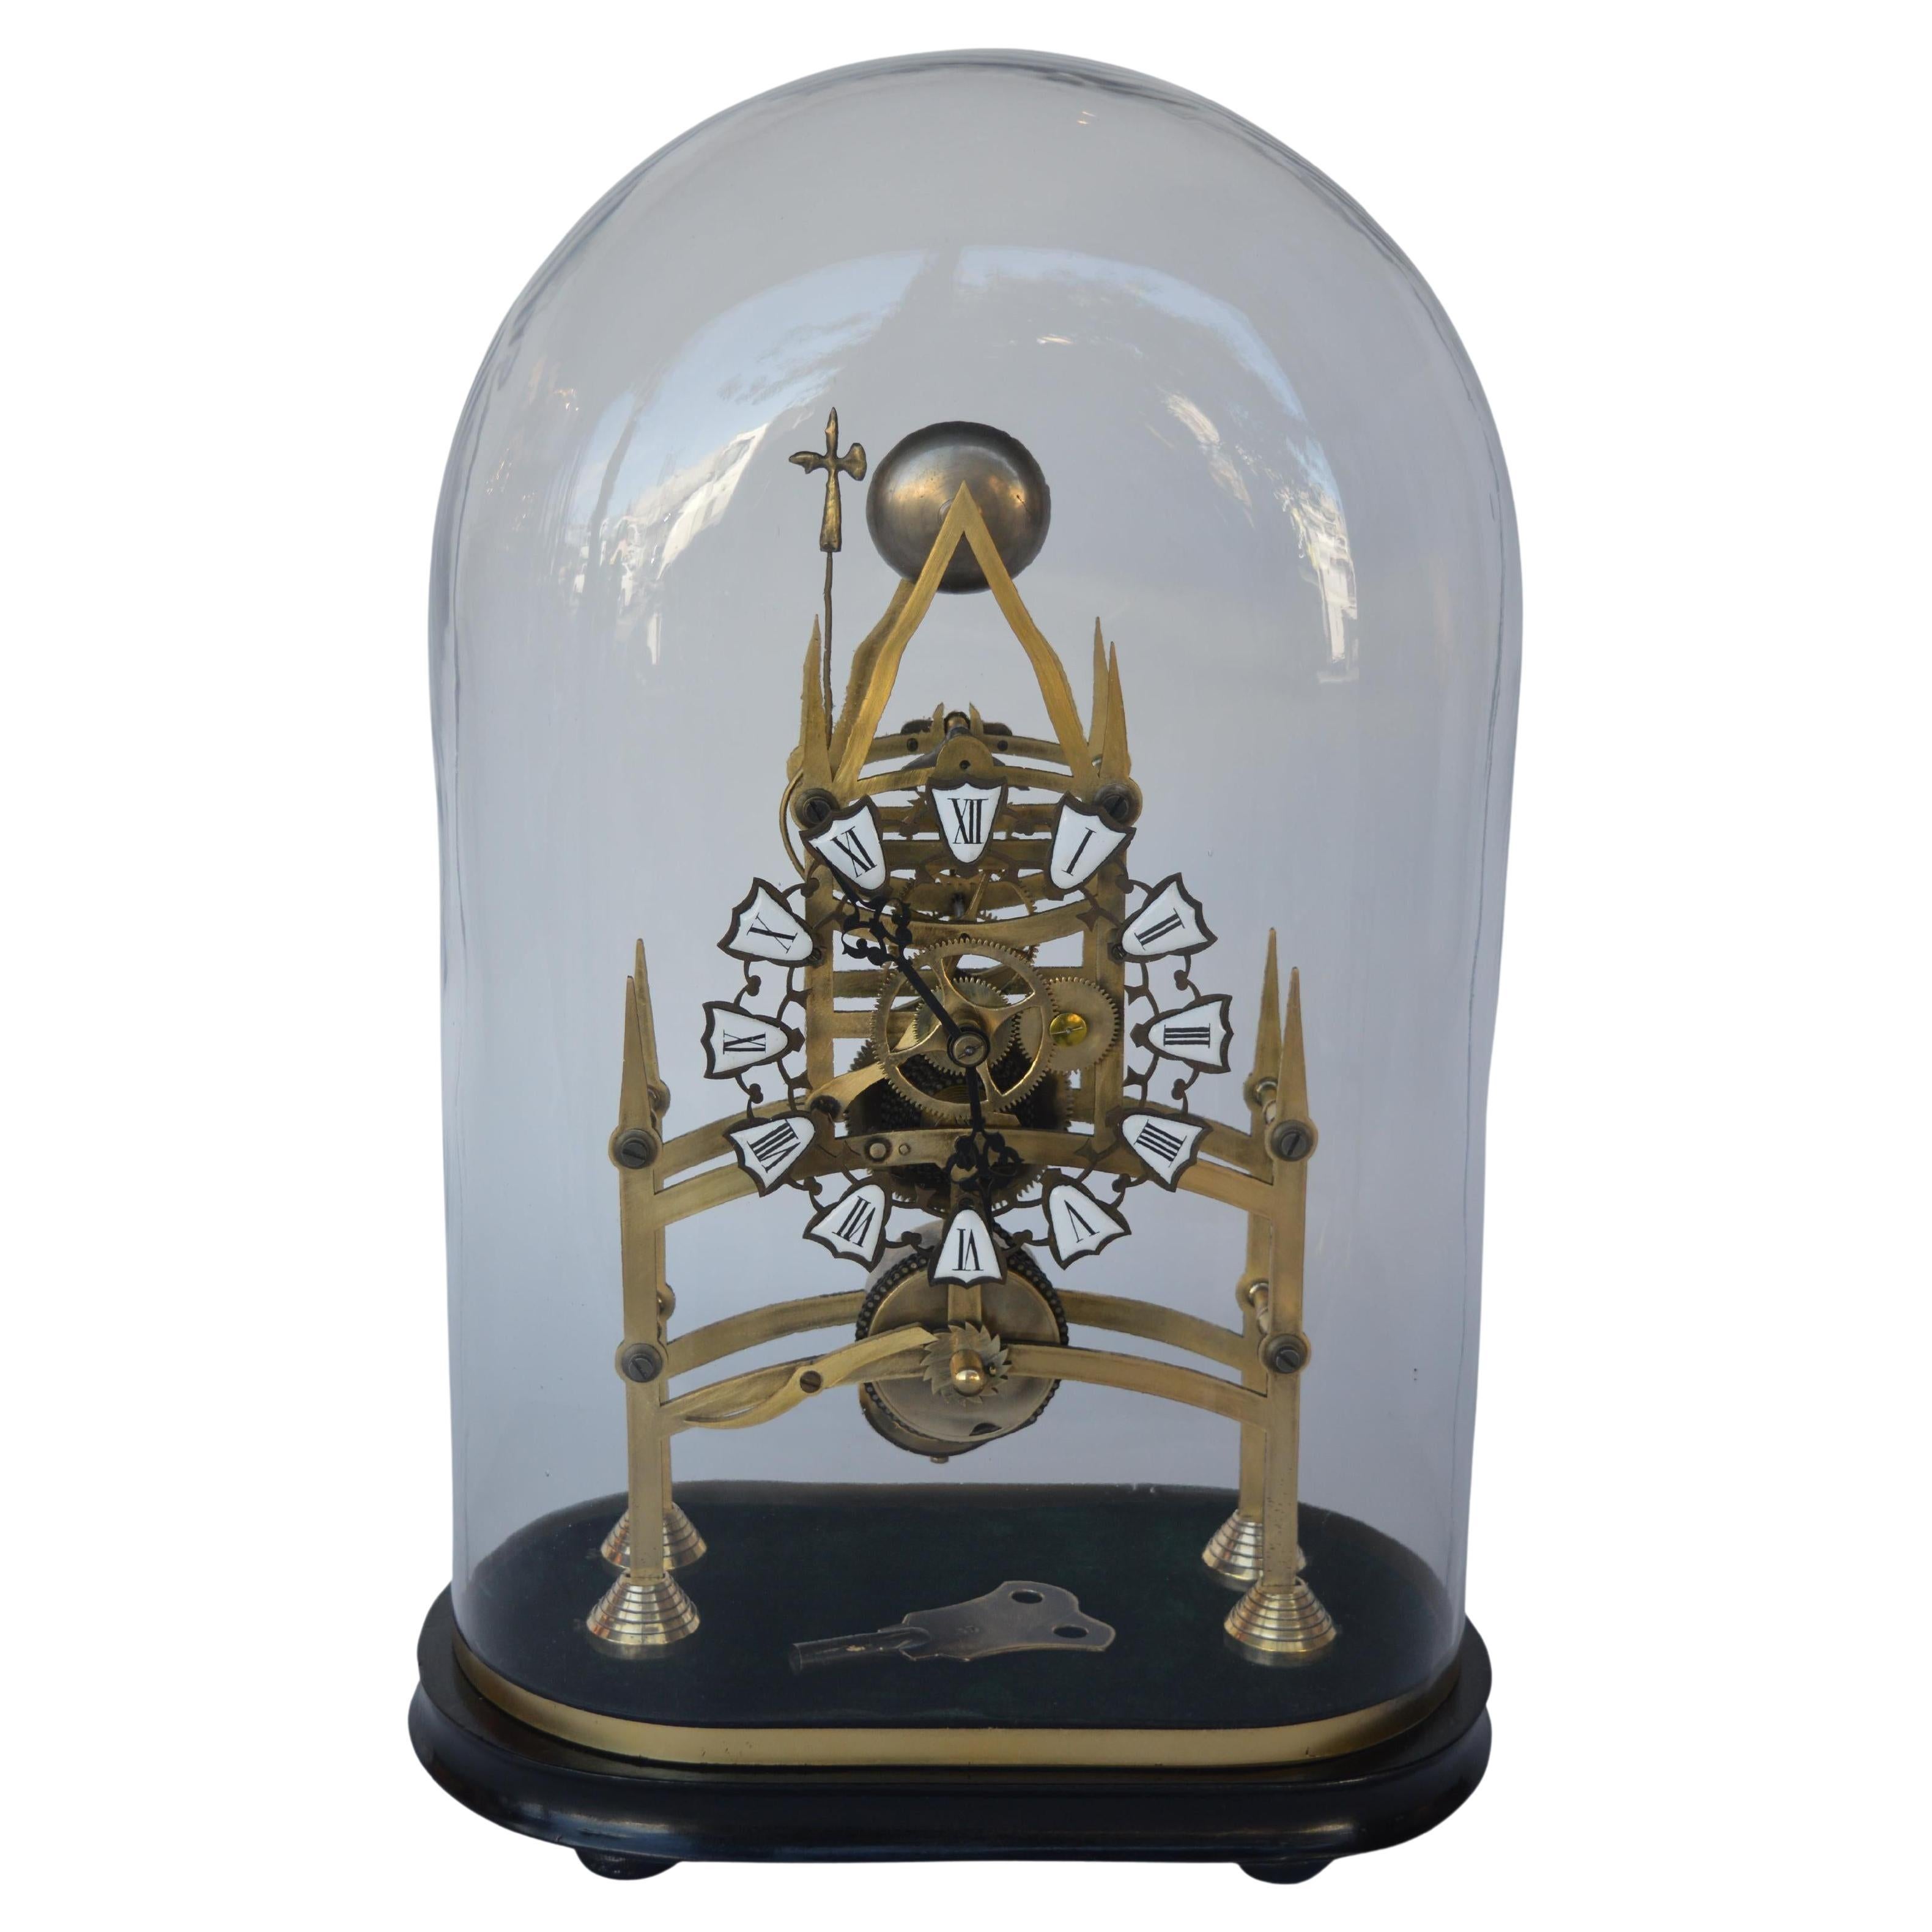 Englische Skelettuhr aus dem späten 19. Jahrhundert mit ovaler Glaskuppel